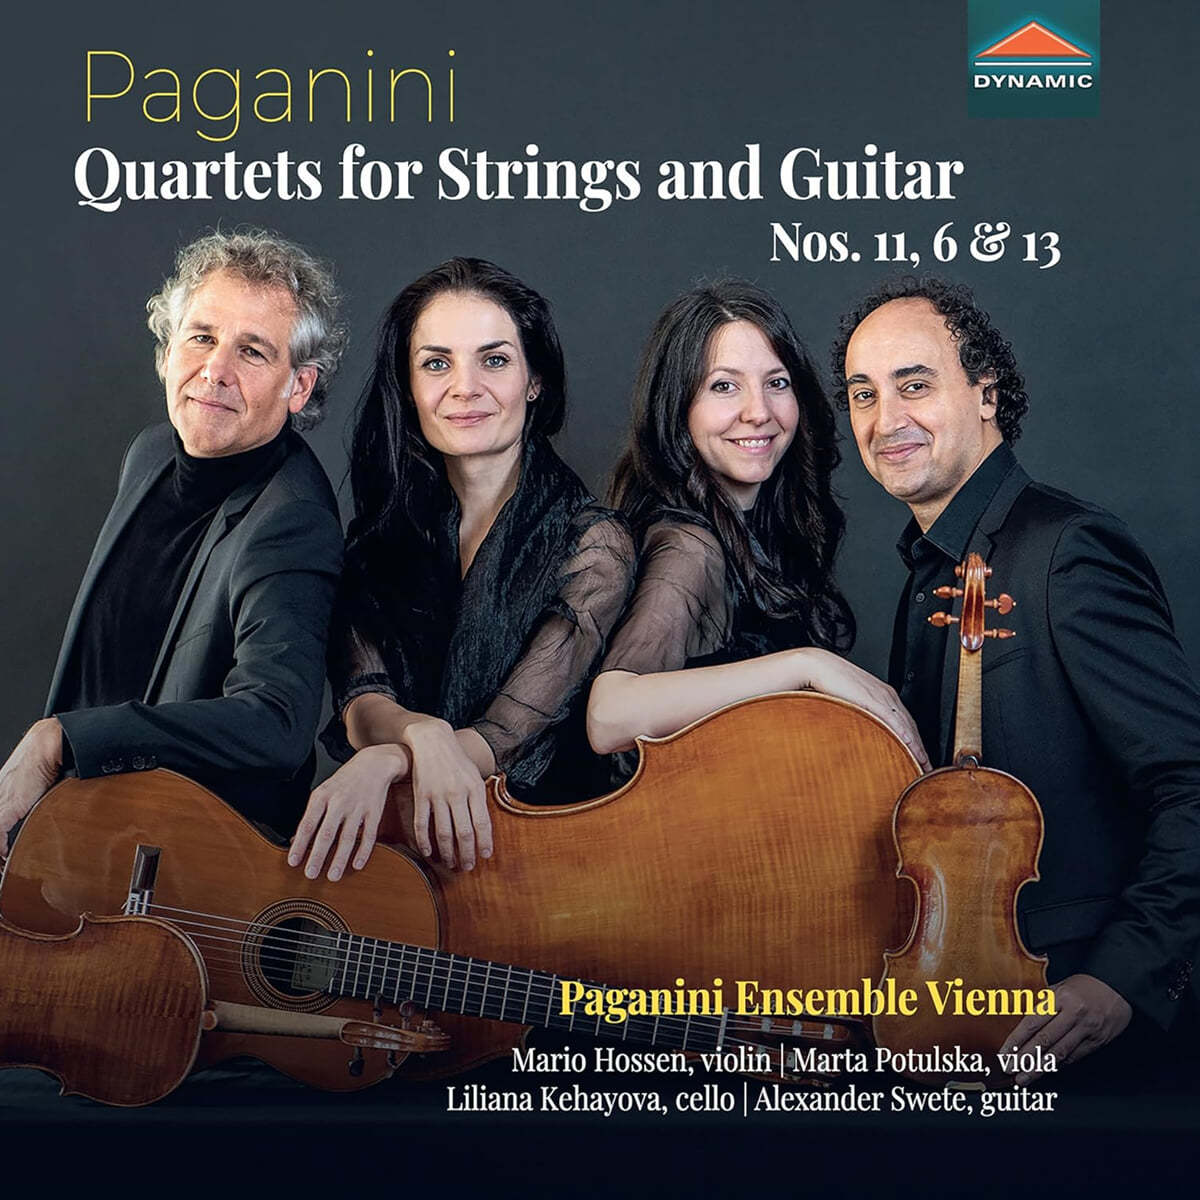 Paganini Ensemble Vienna 파가니니: 현과 기타를 위한 사중주 6, 11, 13번 (Paganini: Quartets For Strings And Guitar Nos.11,6 & 13)